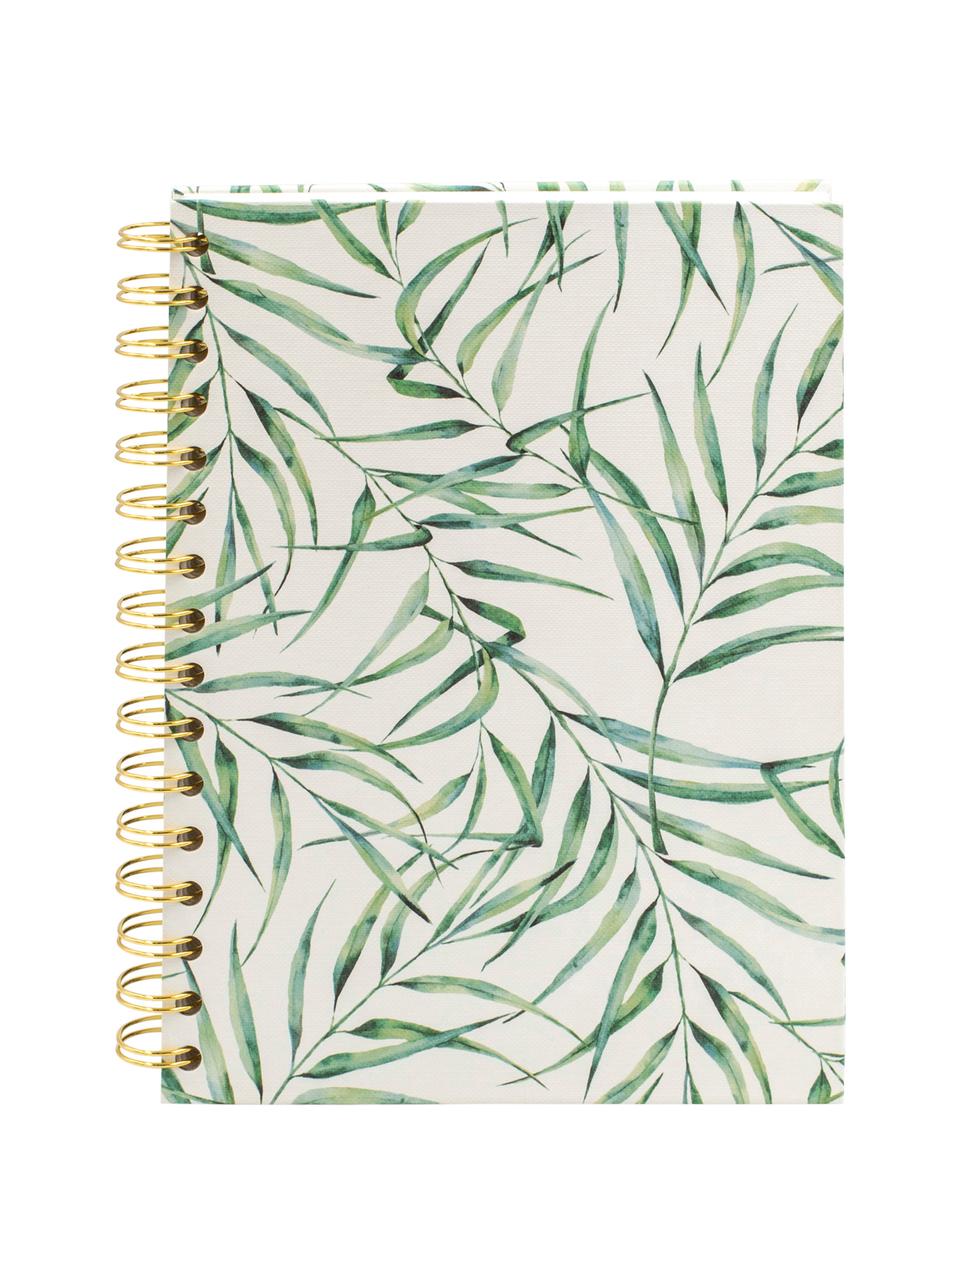 Zápisník Leaf, Bílá, zelená, Š 16 cm, V 21 cm